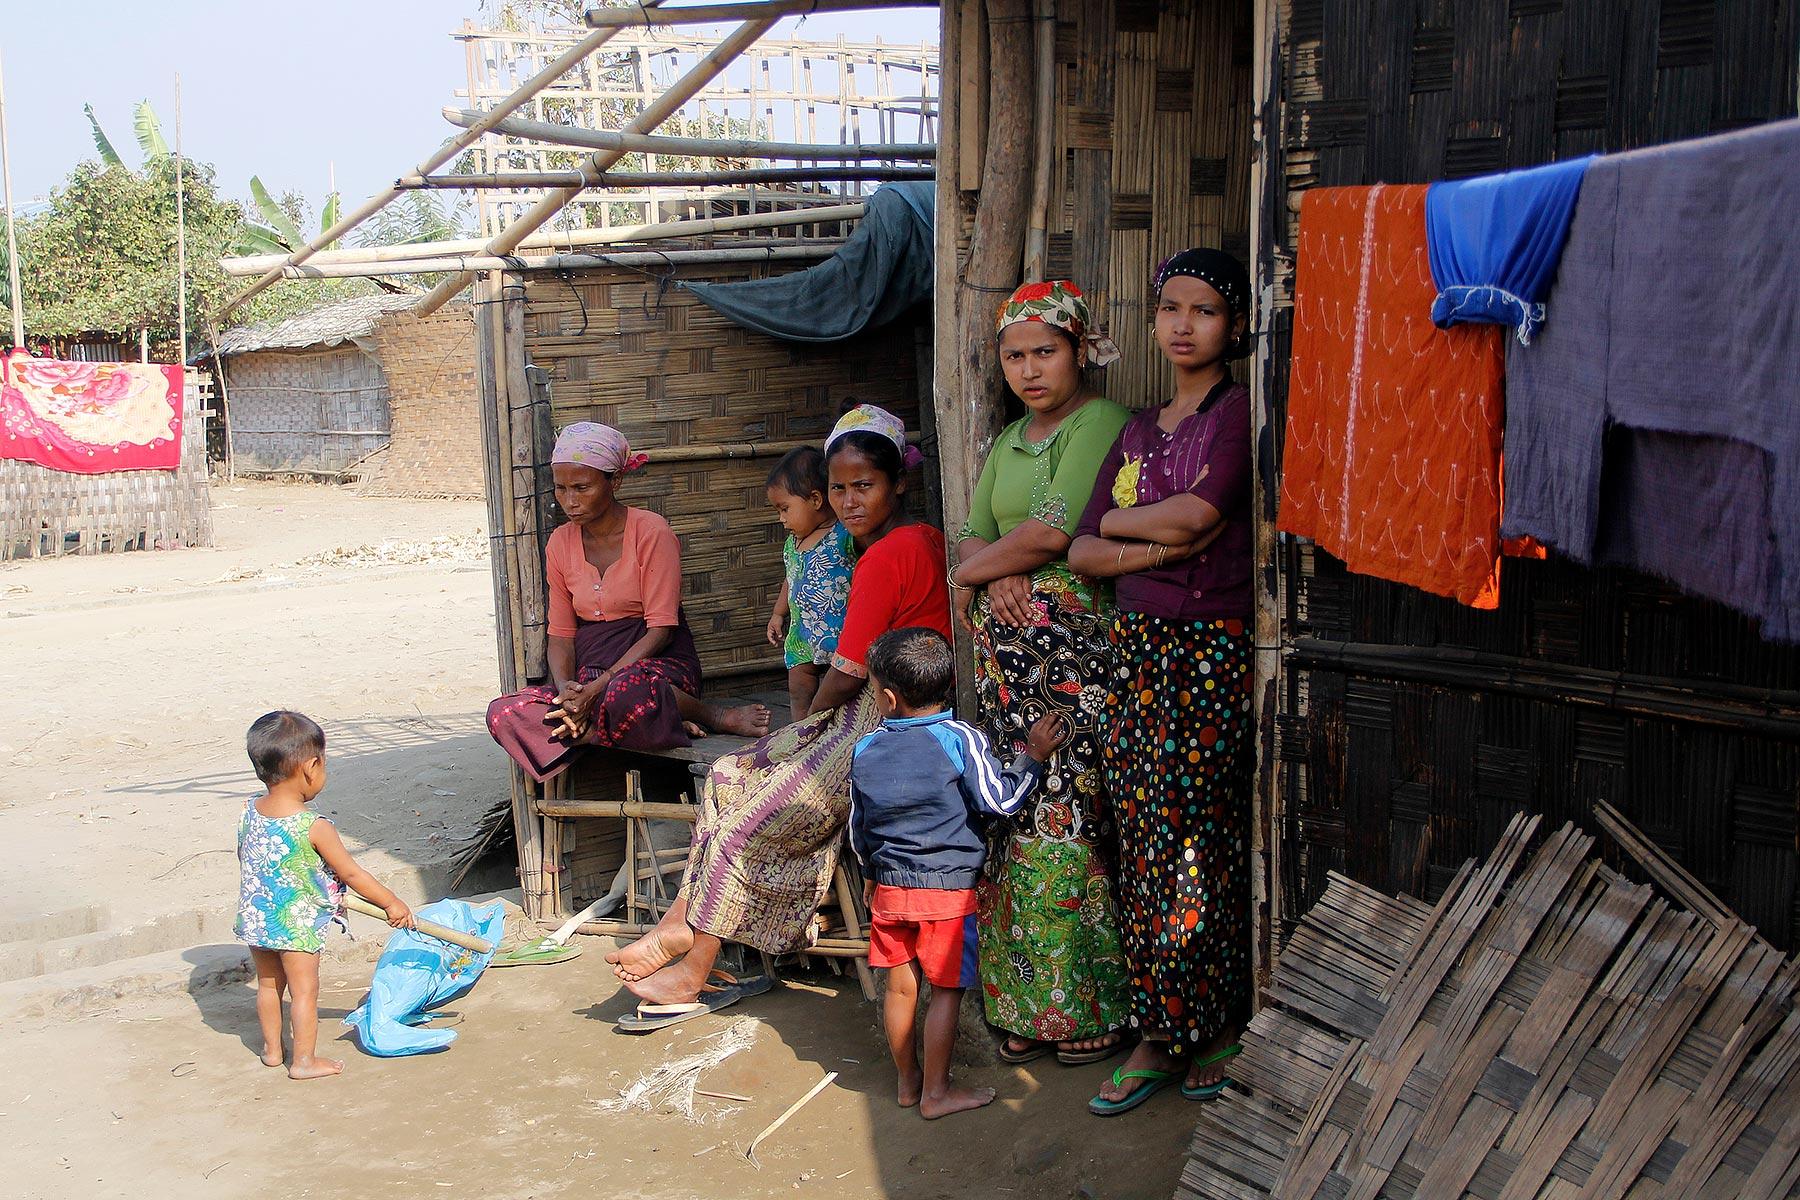 Displaced Rohingya living in Ohn Taw Gyi (South) camp, Rakhine/ Myanmar. Photos: LWF/ I. Htun